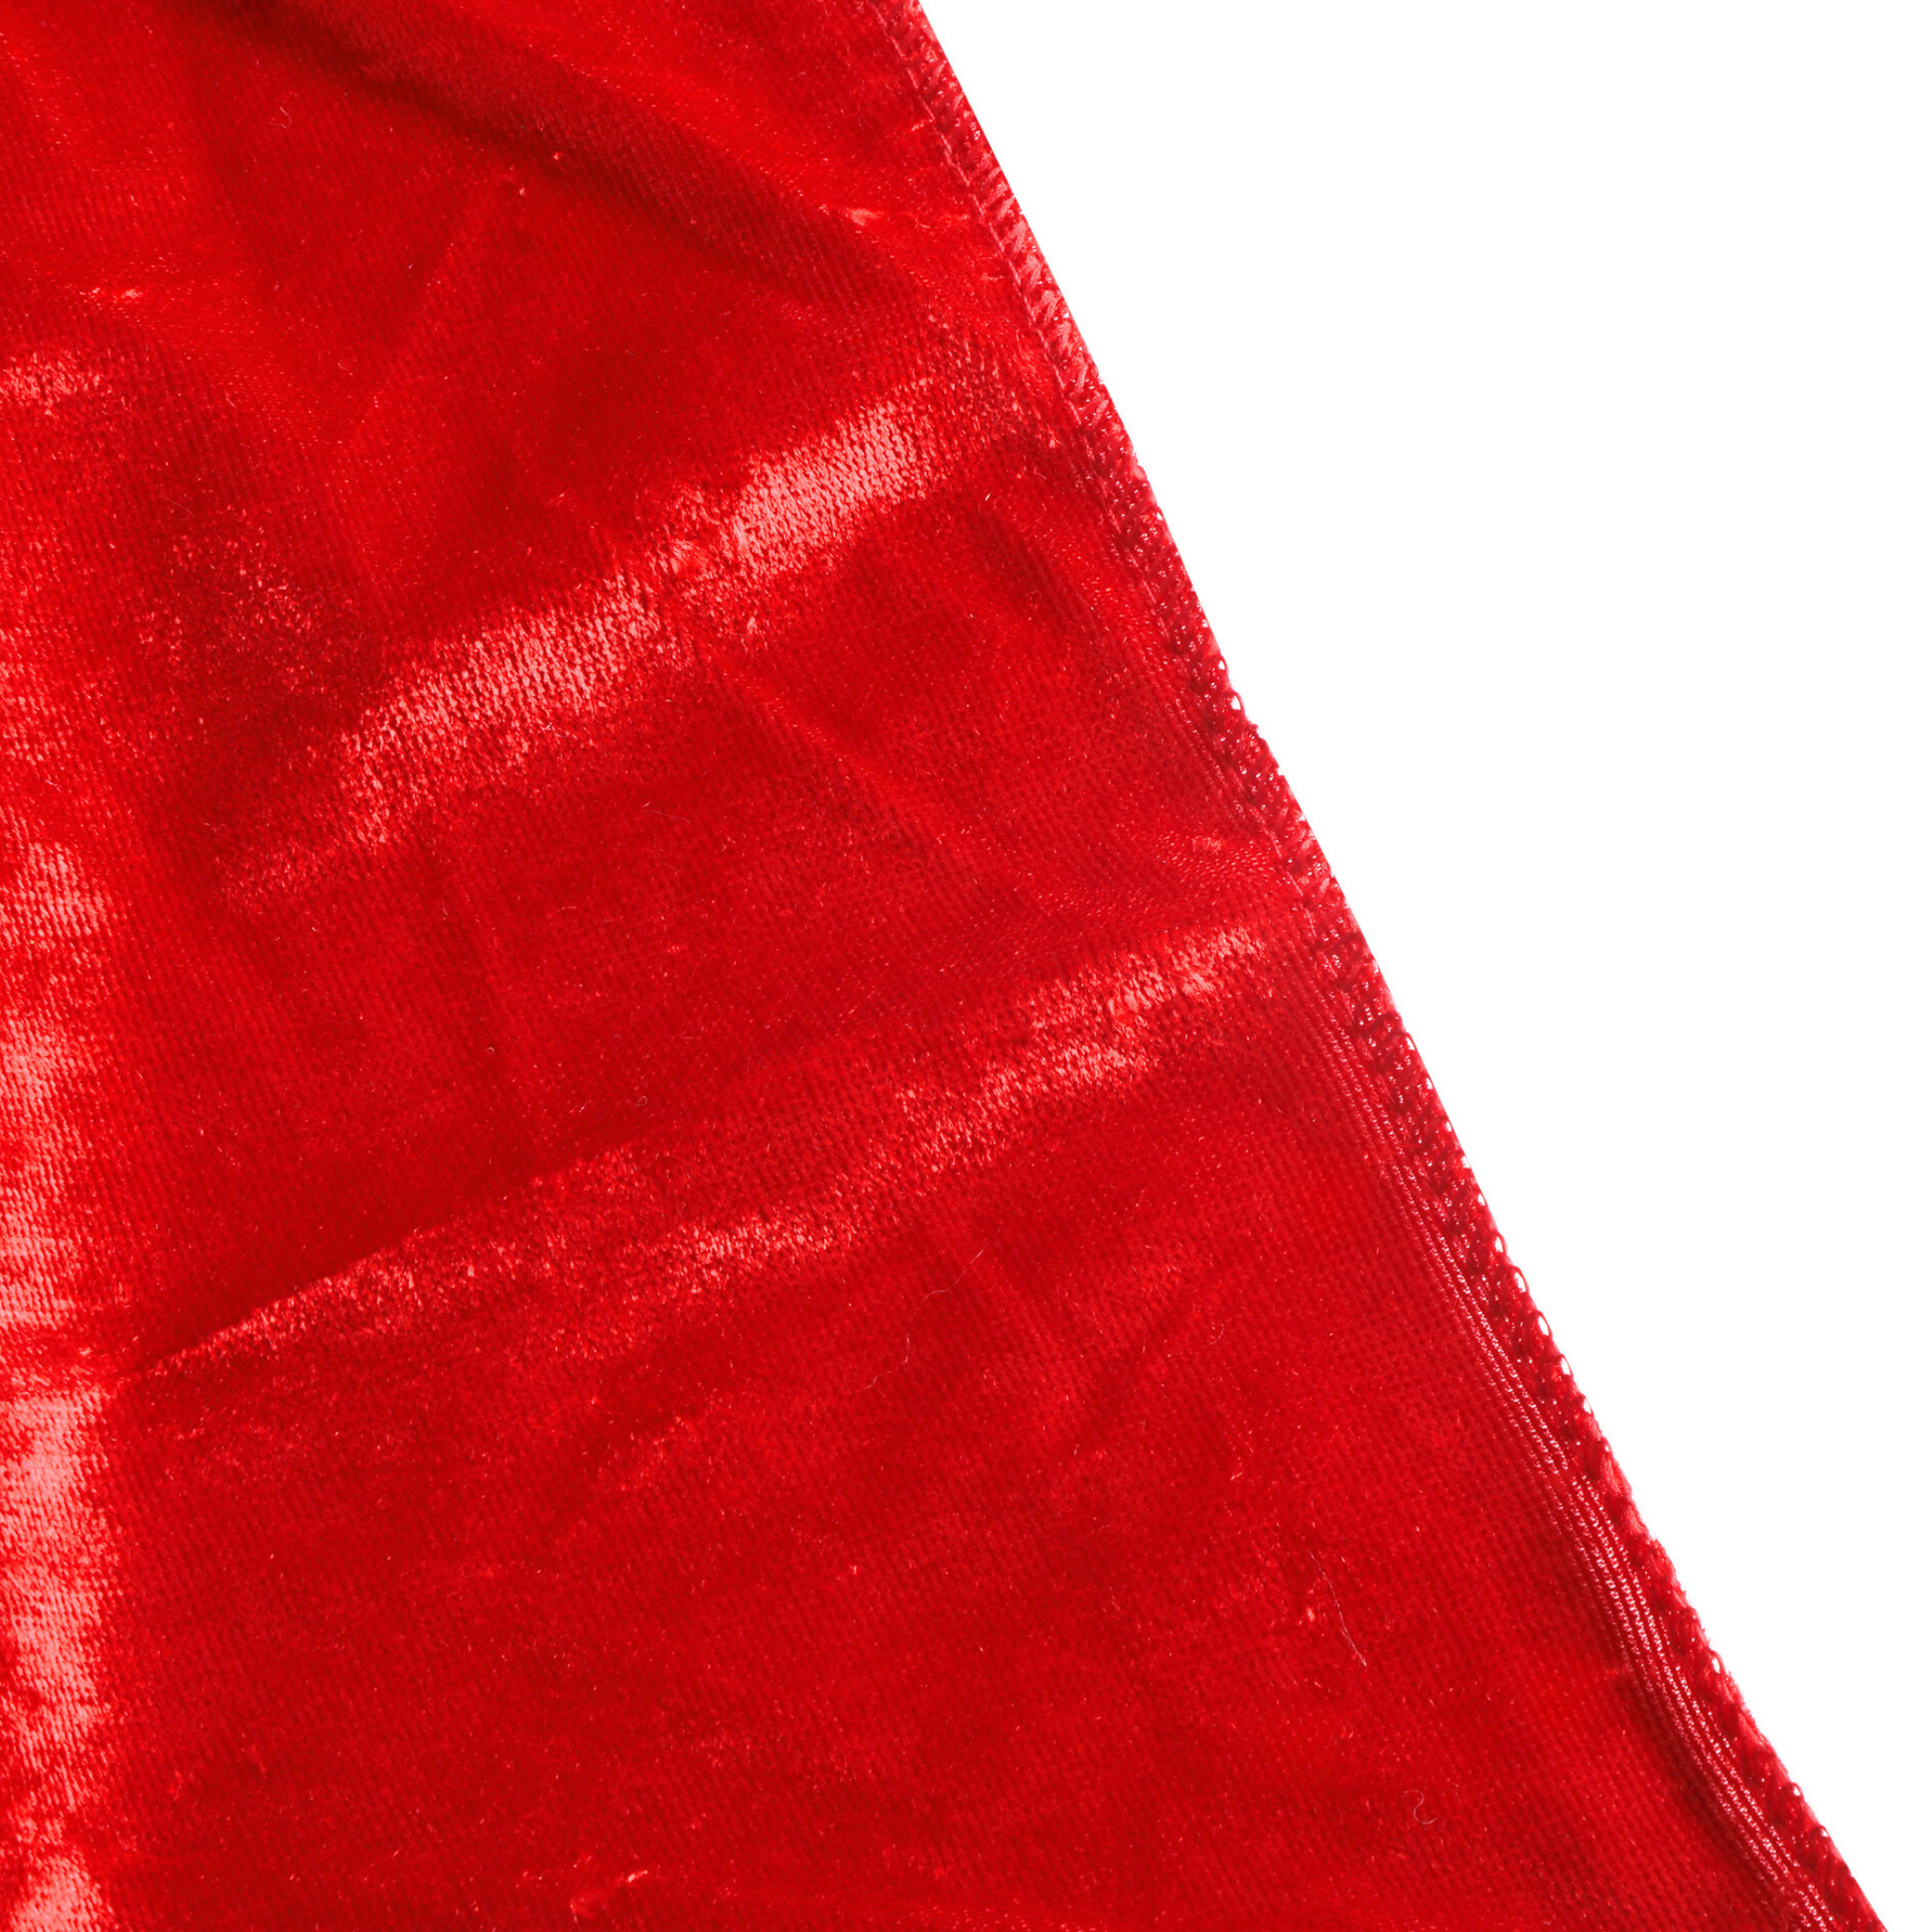 Velvet 132" Round Tablecloth - Red